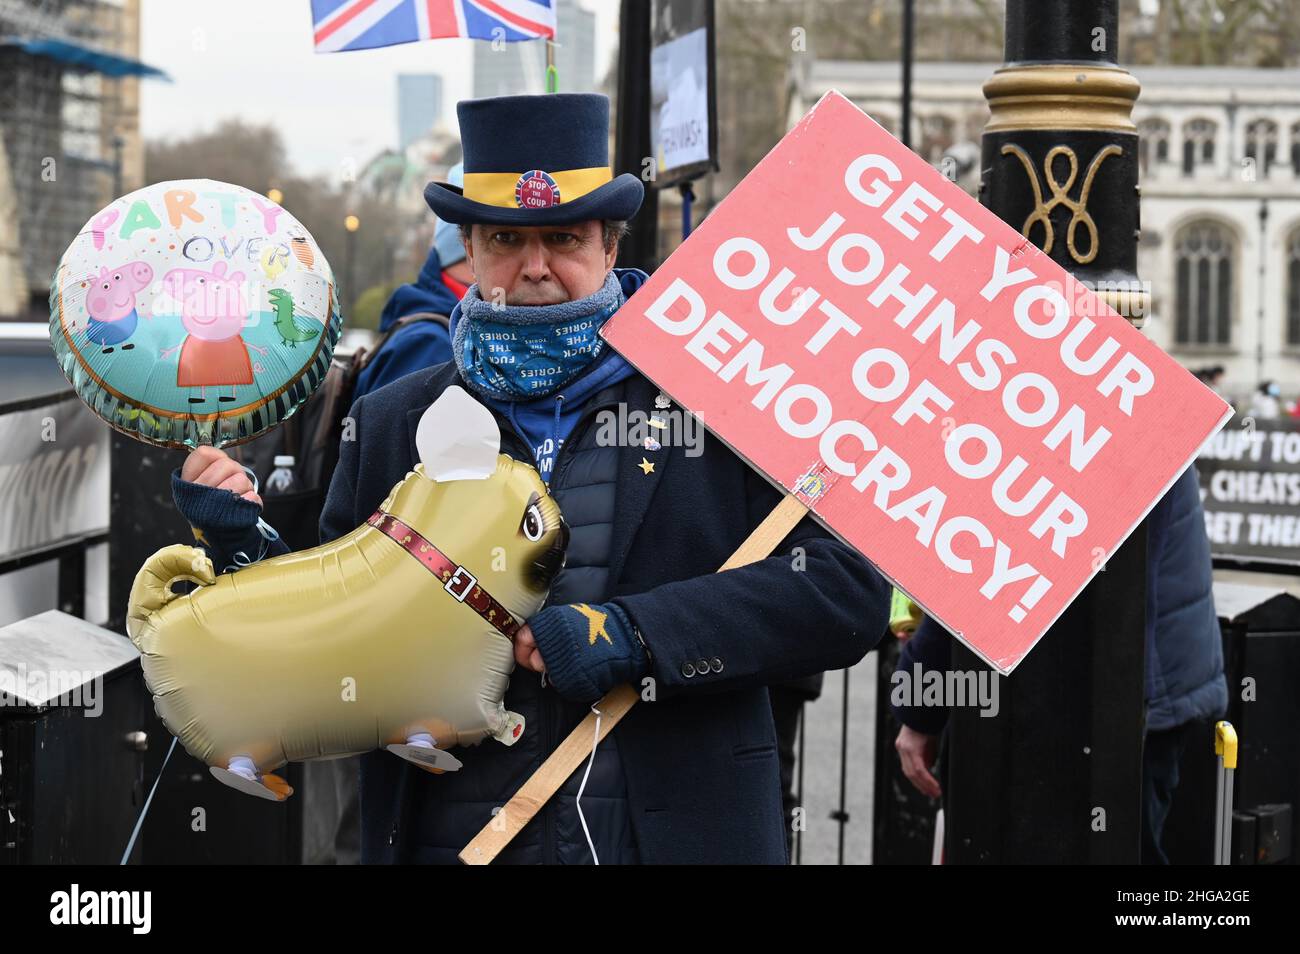 Londres, Royaume-Uni.Steve Bray, de SODEM, a protesté en faveur du renvoi de Boris Johnson au poste de Premier ministre.Il est photographié avec un ballon « Party's Over » de Peppa Pig et un « grand chien » gonflable.Chambres du Parlement, Westminster. Banque D'Images